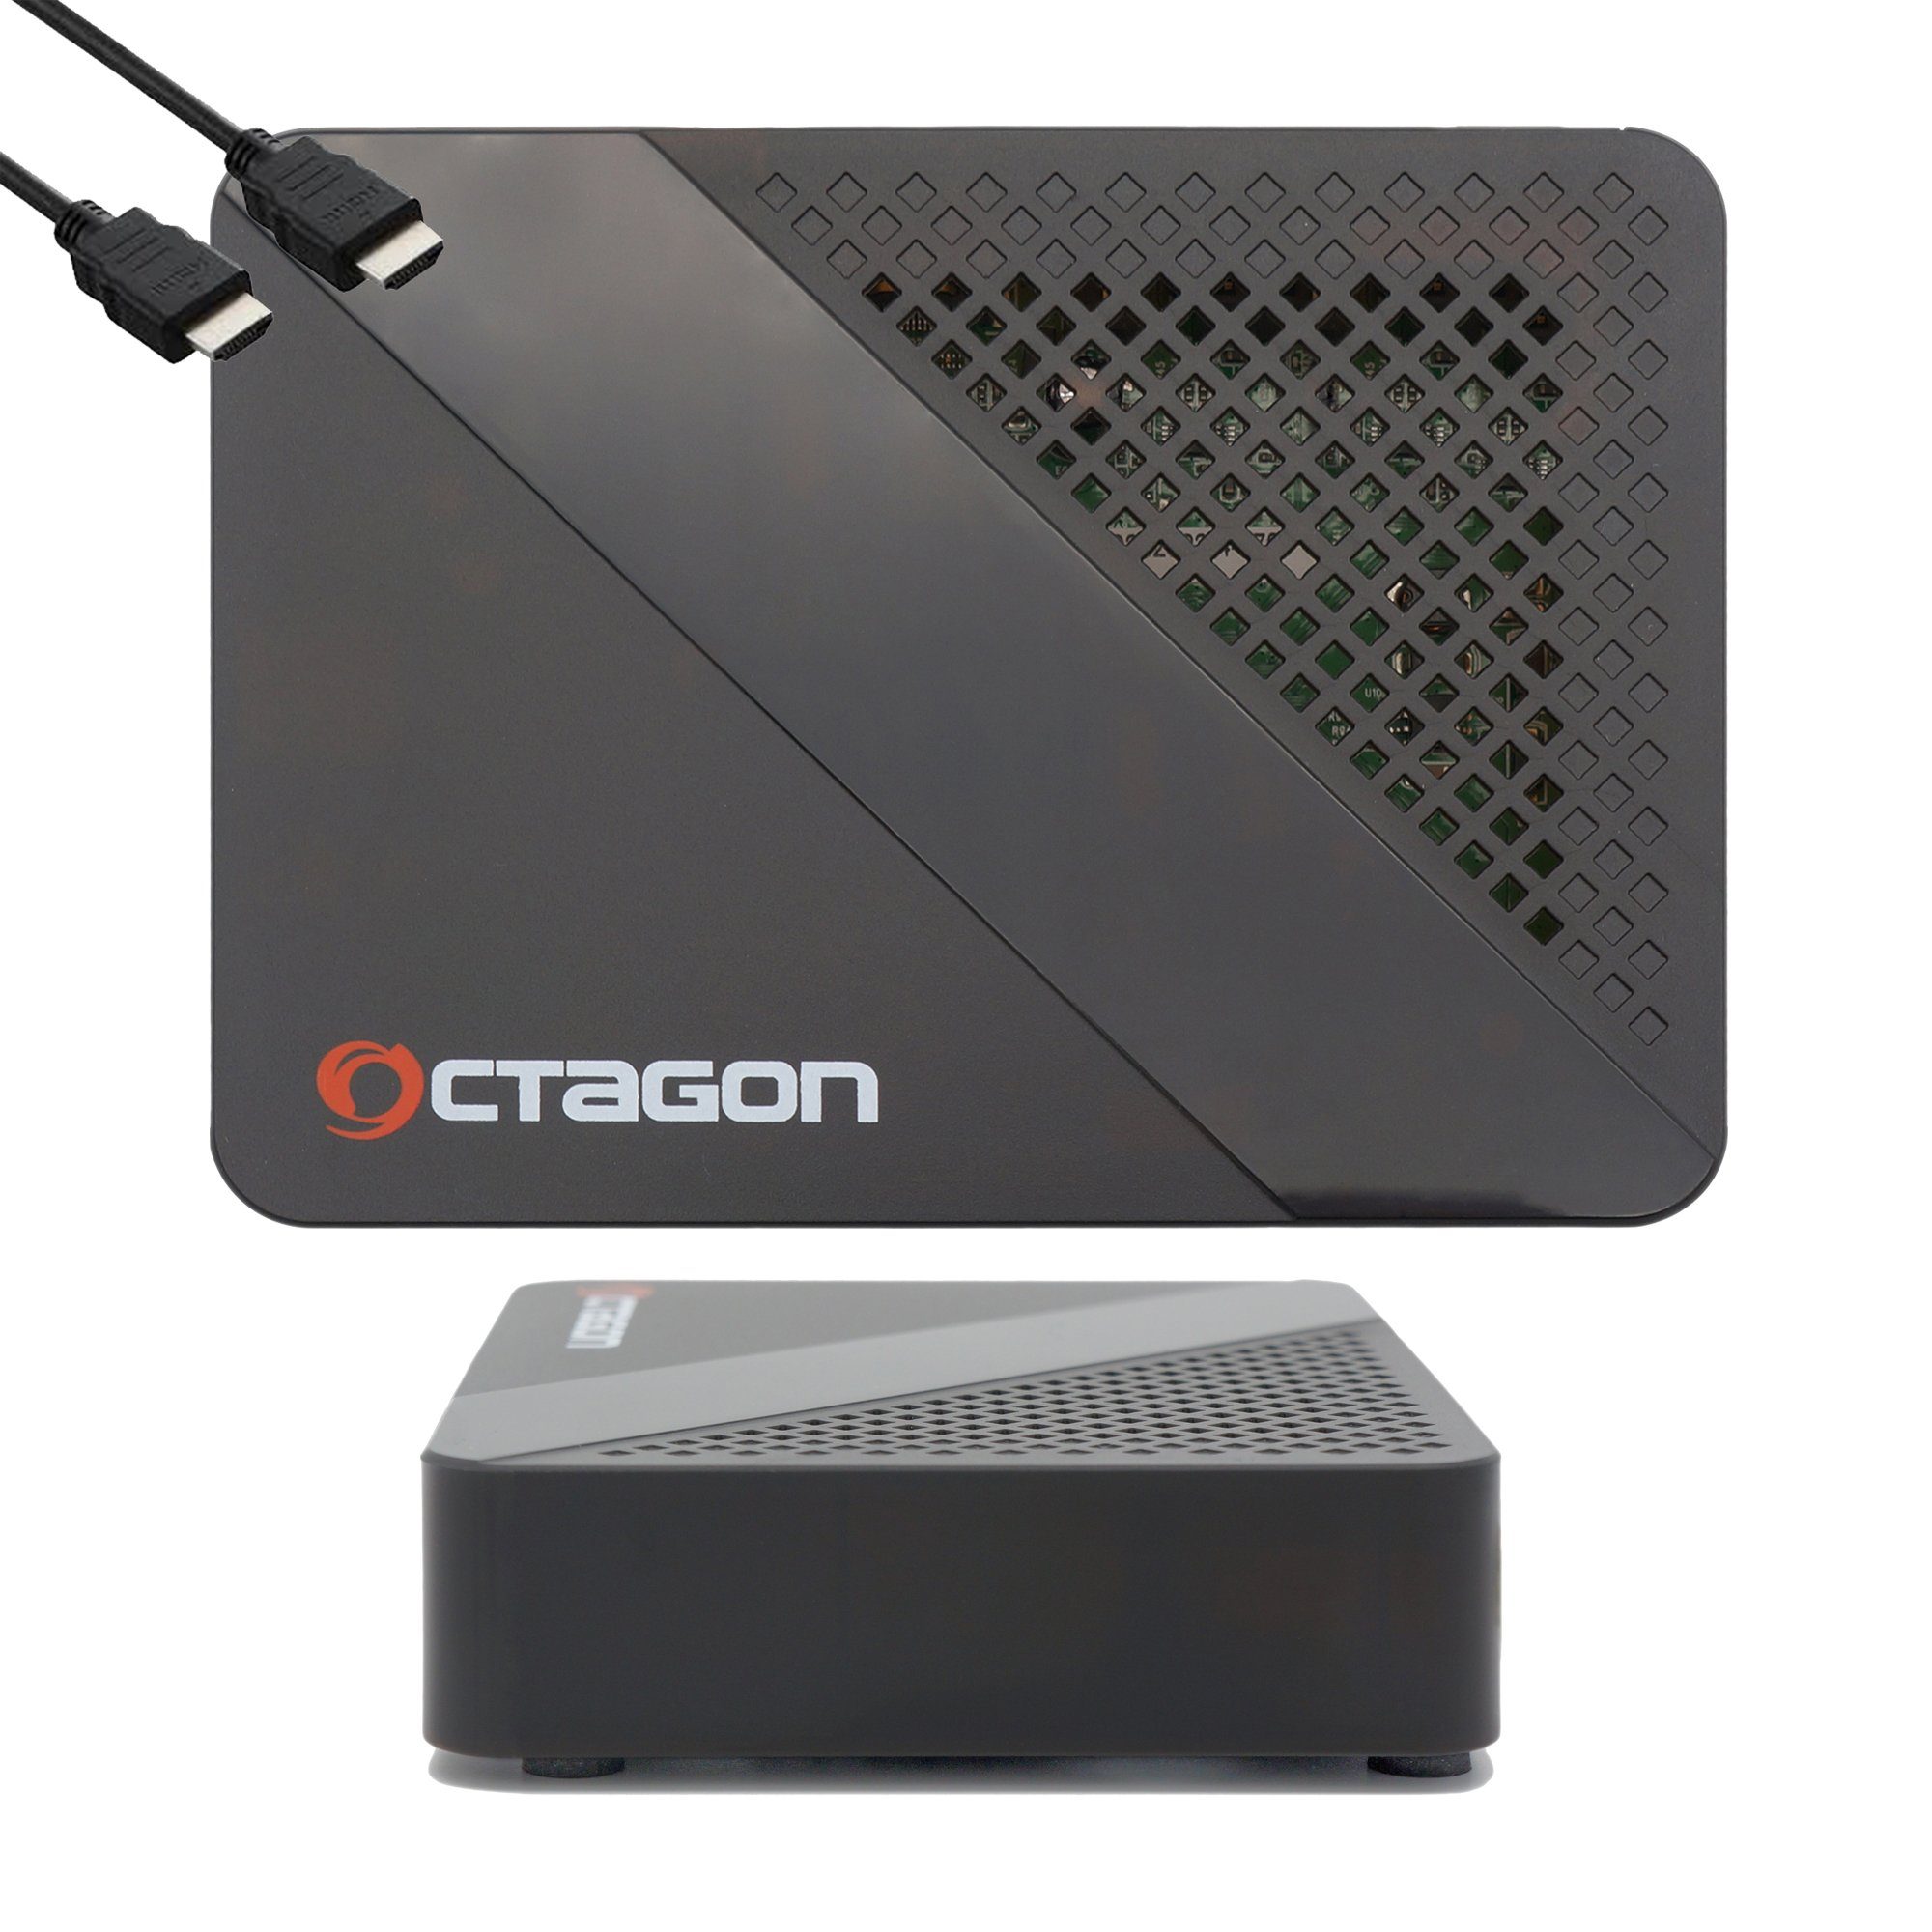 Box Smart OCTAGON H.265 mit WL Streaming-Box Mbits WiFi 150 HEVC IP IPTV HD SX887